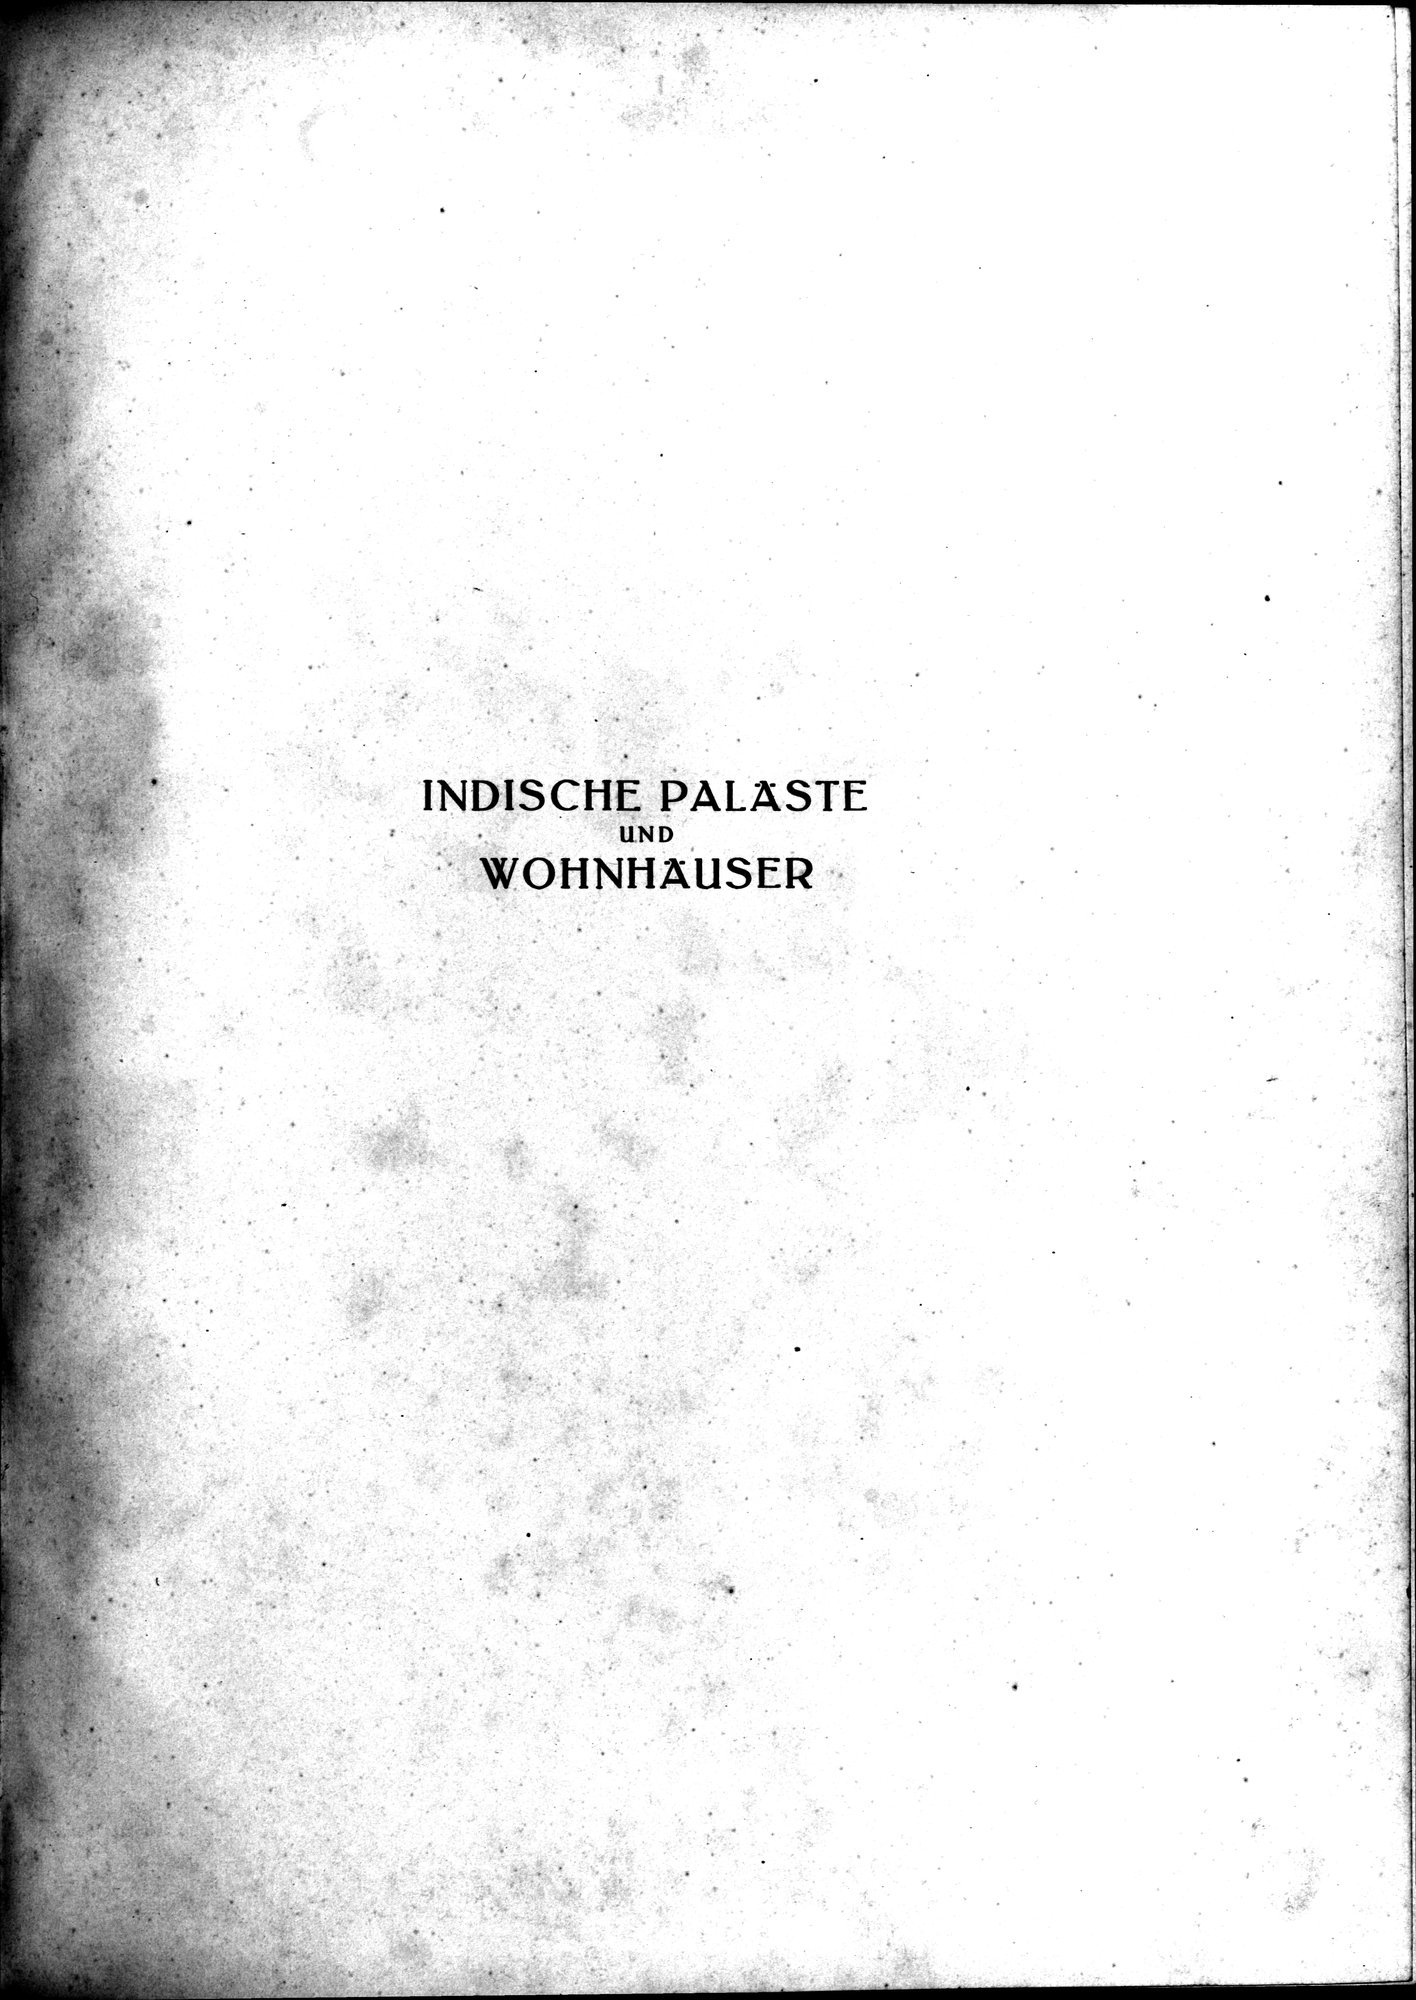 Indische Palaste und Wohnhauser : vol.1 / Page 5 (Grayscale High Resolution Image)